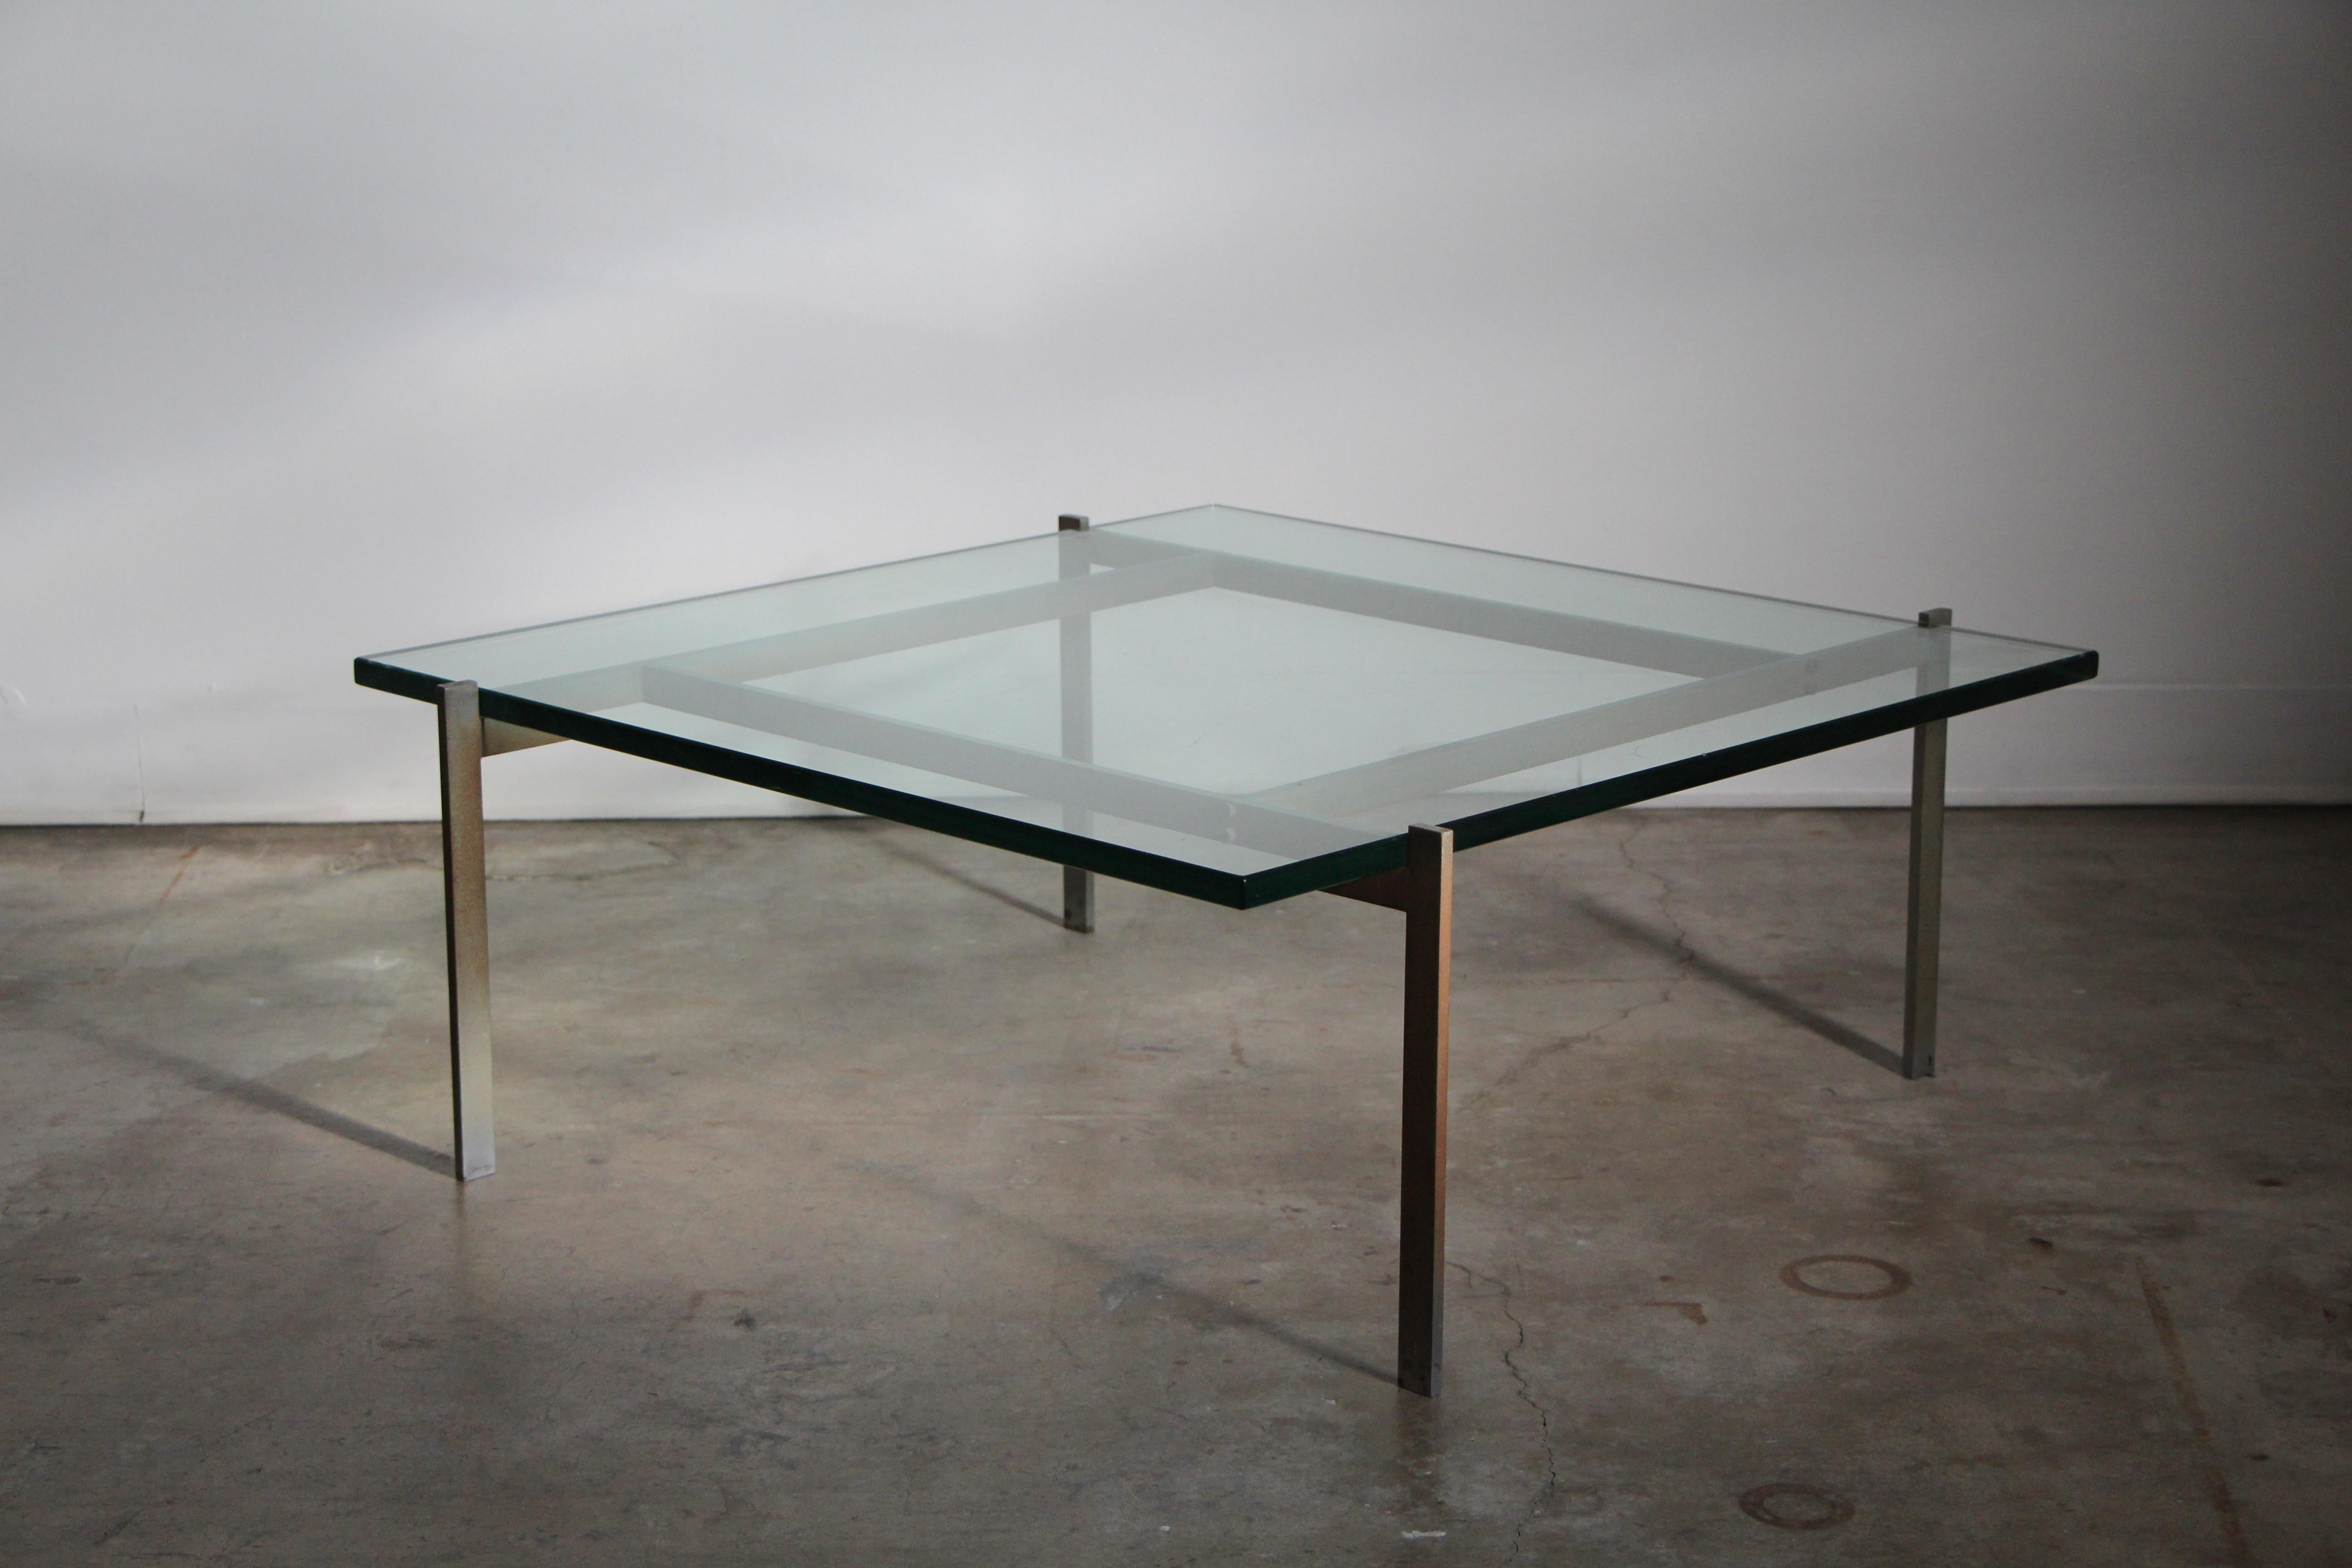 Table basse de collection PK-61, conçue par Poul Kjaerholm et fabriquée par E. Kold Christensen au Danemark, vers les années 1950. La table est dotée d'une structure en acier chromé satiné et d'un plateau en verre vert d'origine. Le cadre présente